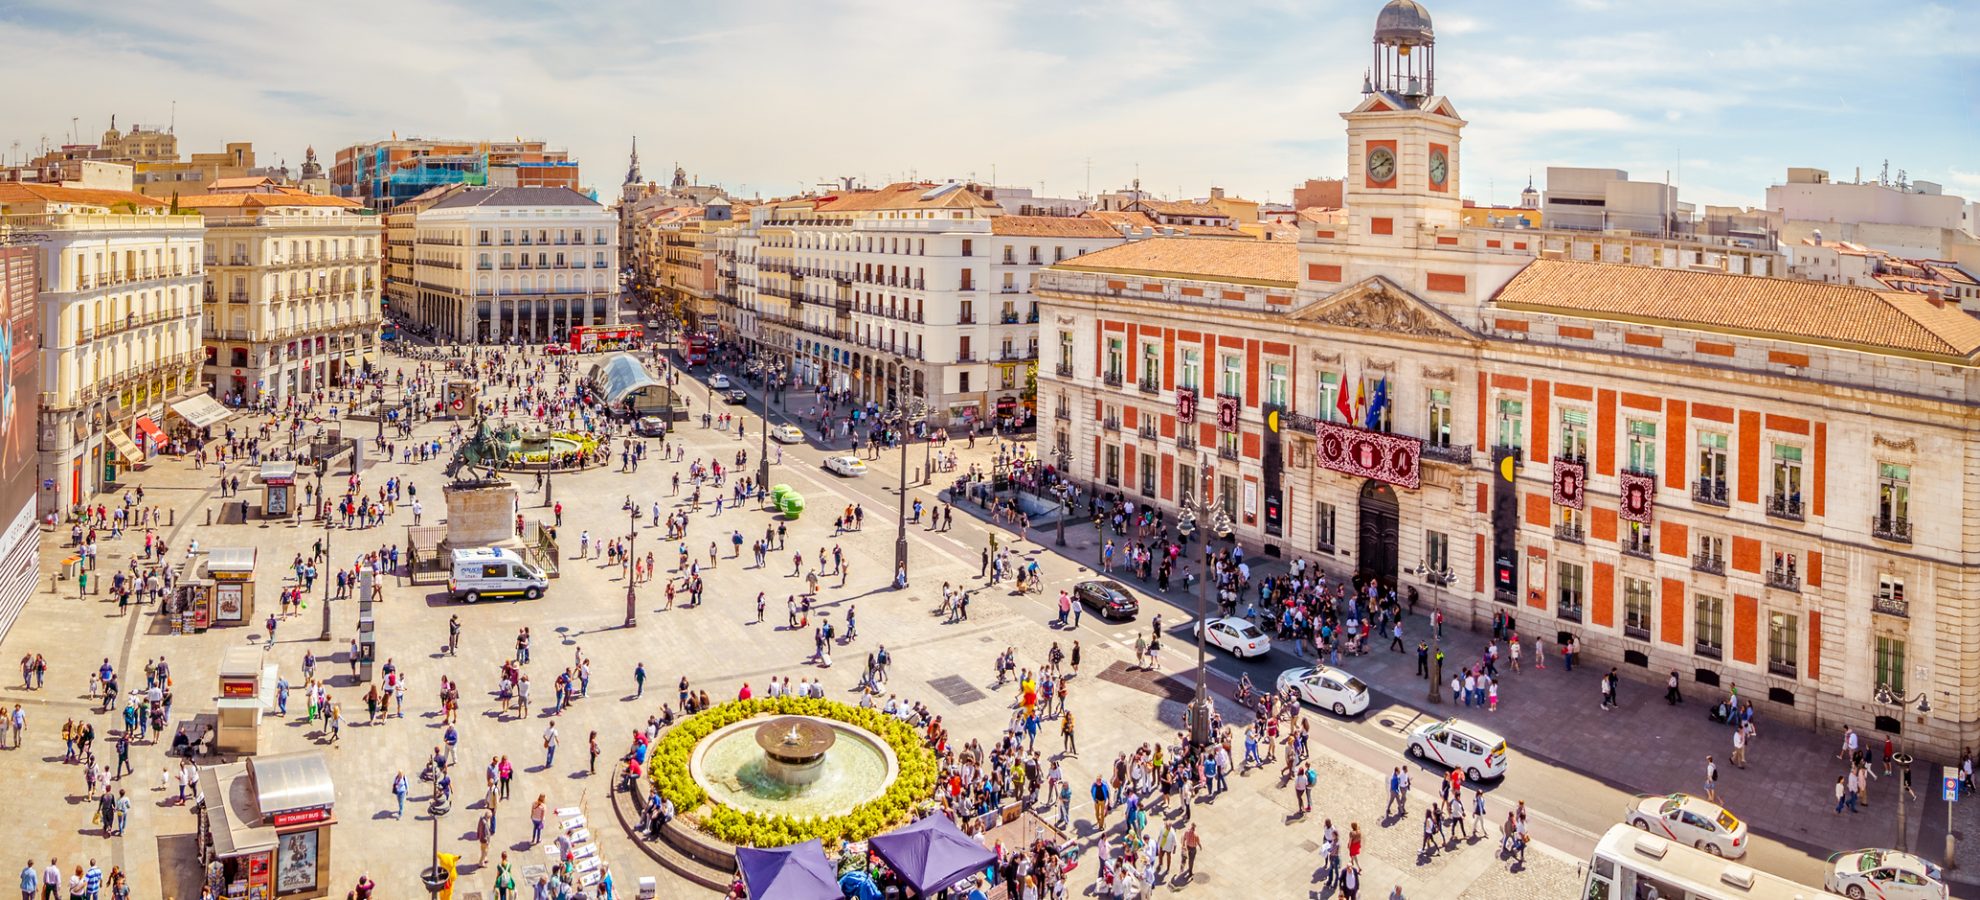 Bezienswaardigheden Madrid - Puerta del Sol